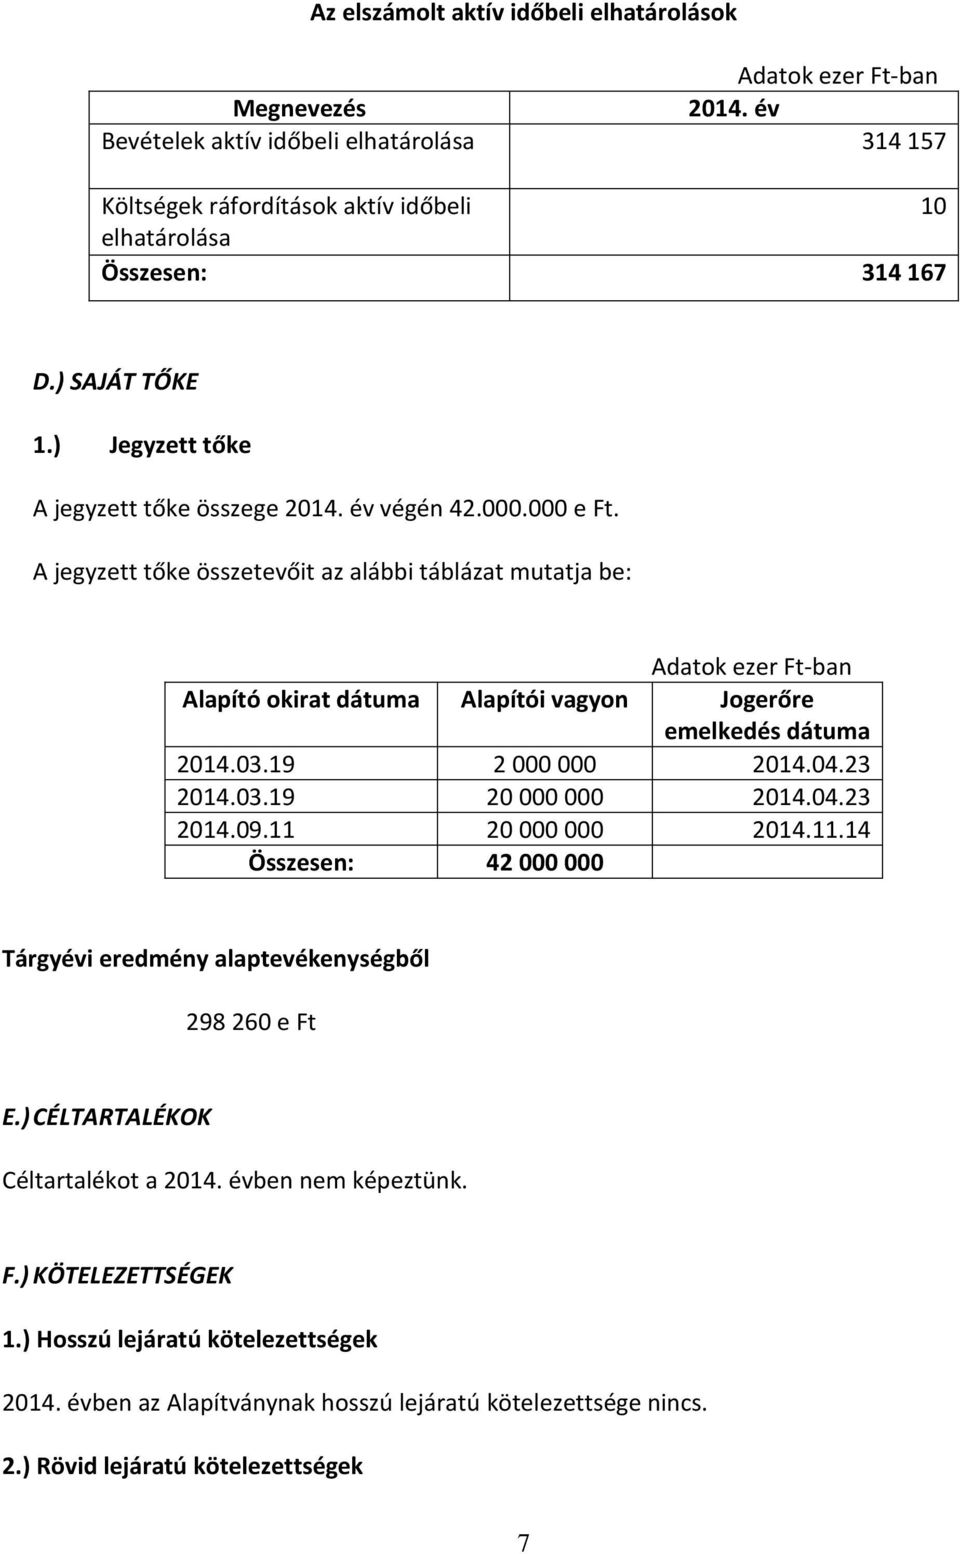 A jegyzett tőke összetevőit az alábbi táblázat mutatja be: Alapító okirat dátuma Alapítói vagyon Jogerőre emelkedés dátuma 2014.03.19 2 000 000 2014.04.23 2014.03.19 20 000 000 2014.04.23 2014.09.